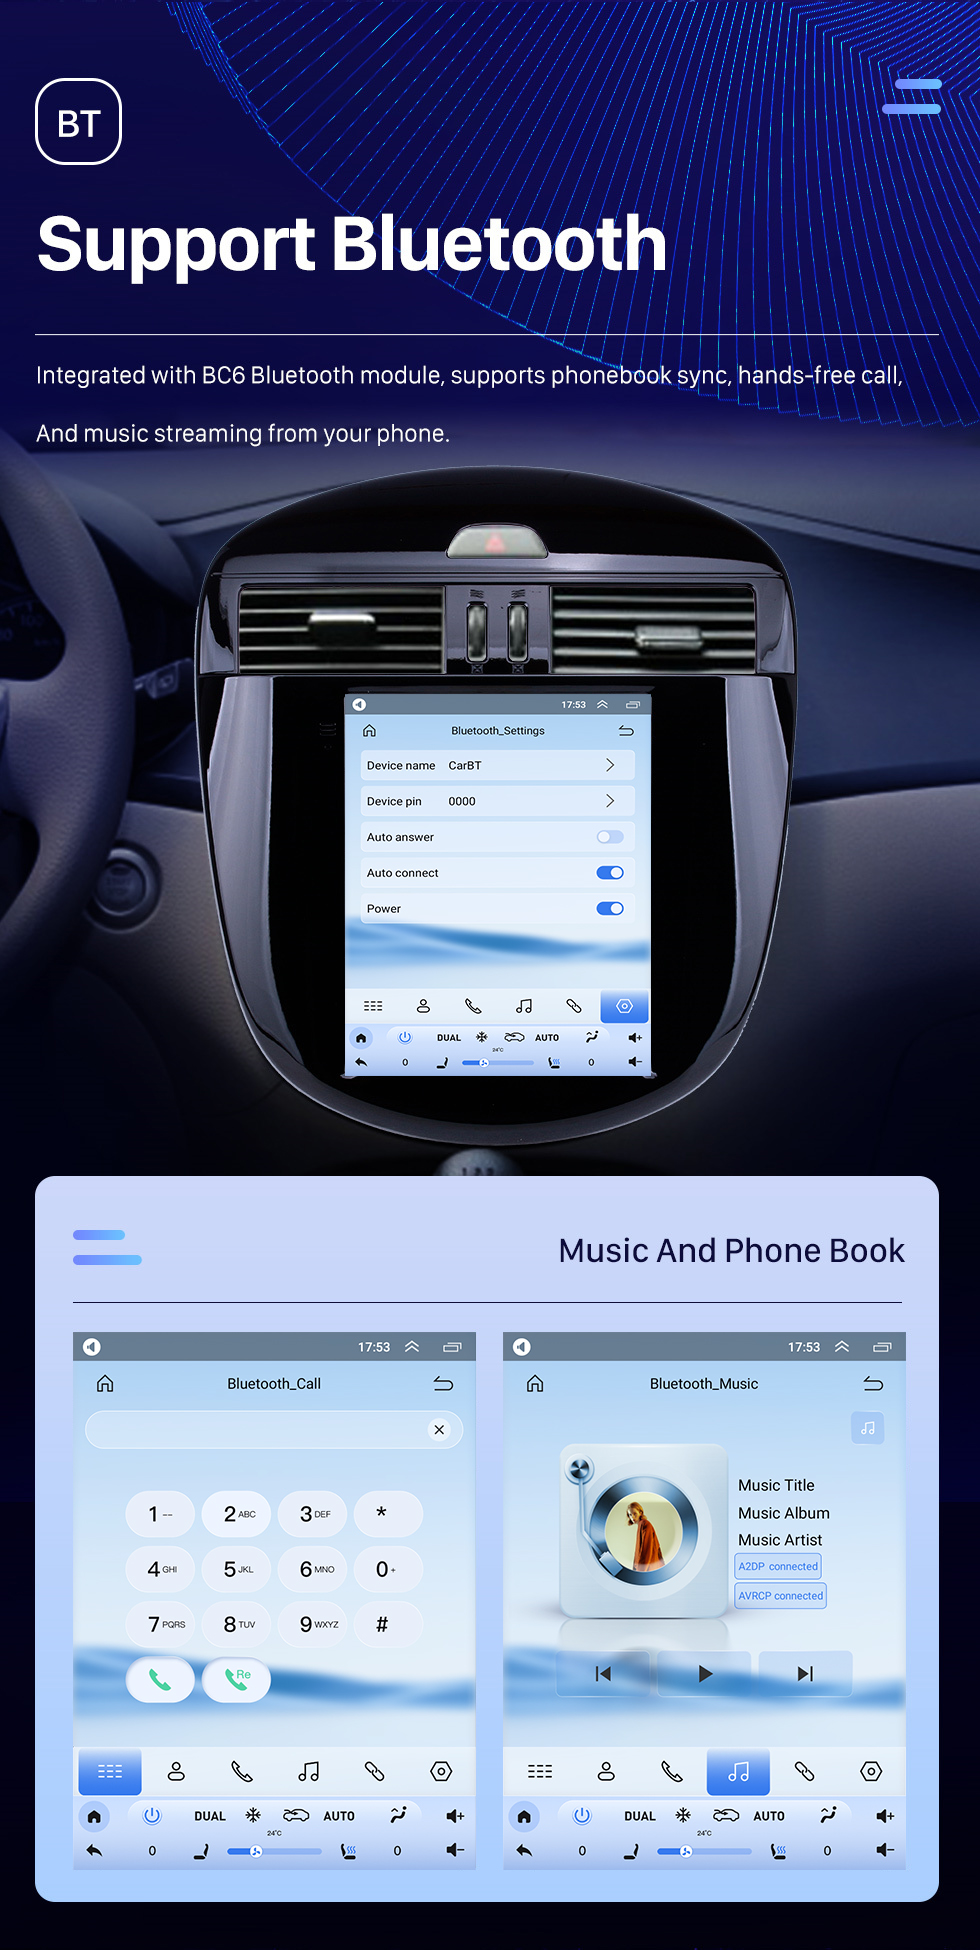 Seicane Сенсорный экран HD для Nissan Tiida 2011-2015 гг. Радио Android 10.0 9,7-дюймовая система GPS-навигации с Bluetooth Поддержка USB Цифровое телевидение Carplay